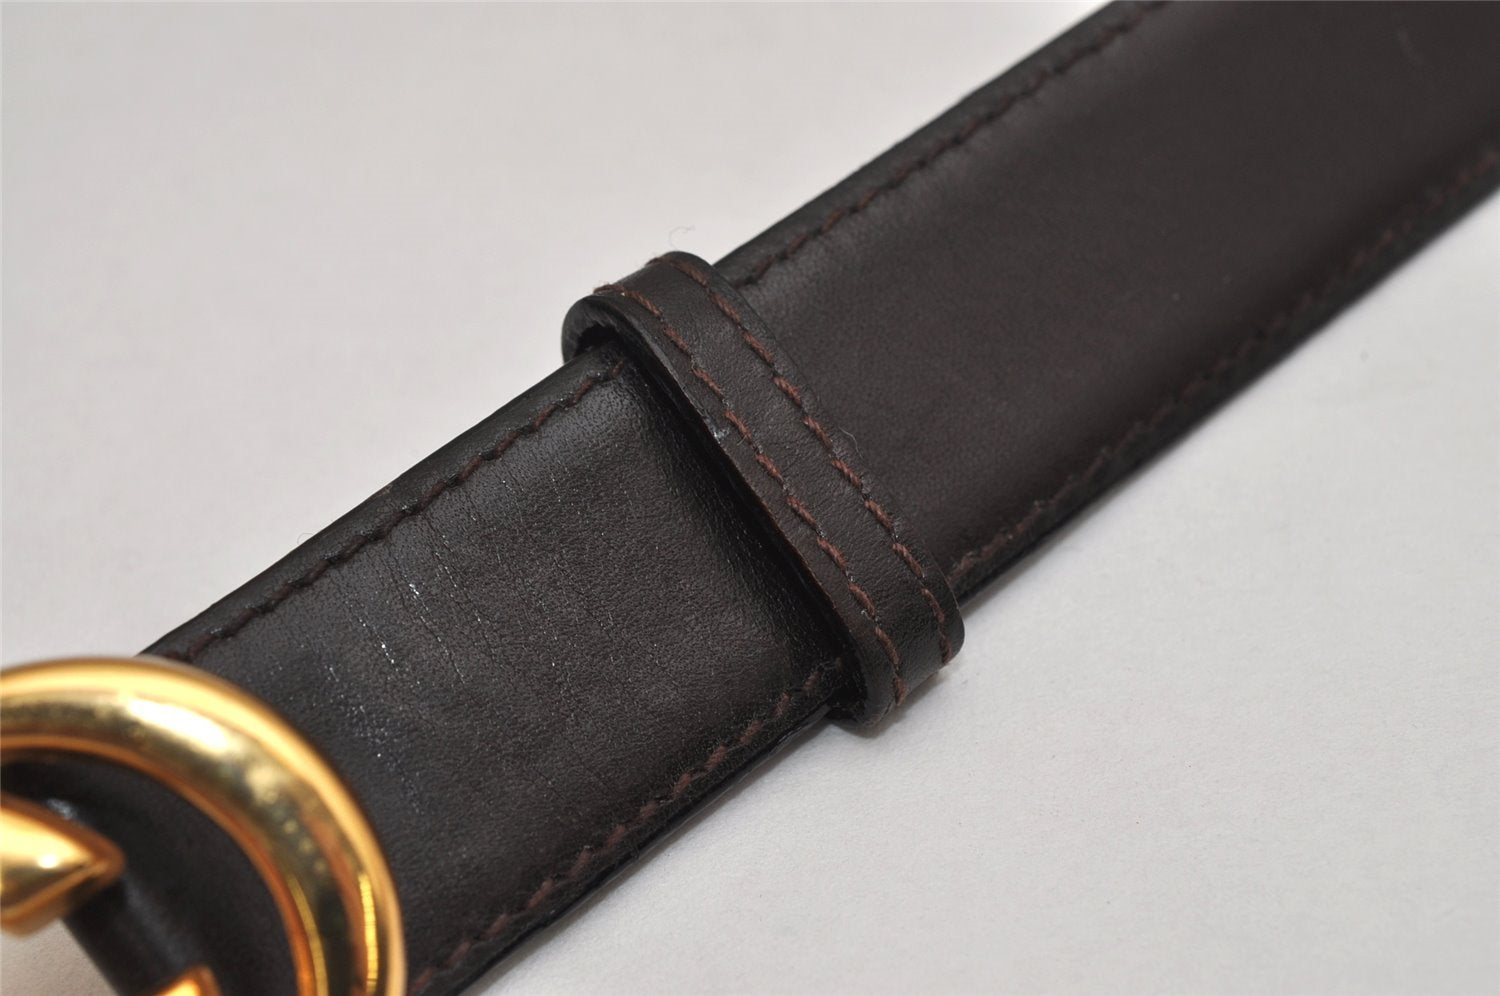 Authentic GUCCI Vintage Belt Leather Size 110cm 43.3